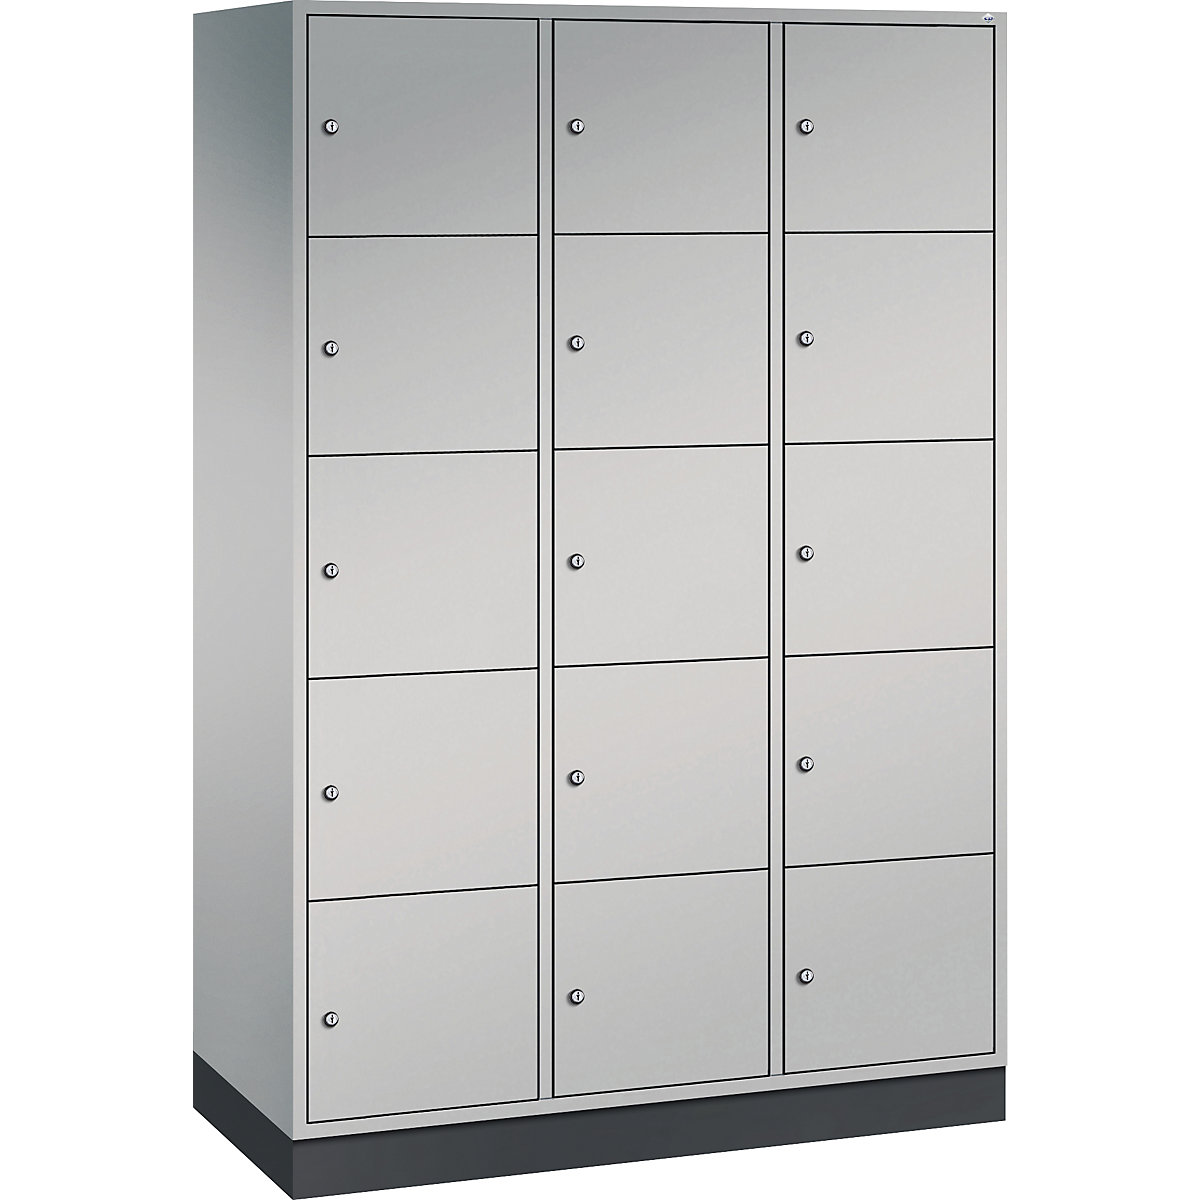 INTRO steel compartment locker, compartment height 345 mm – C+P, WxD 1220 x 500 mm, 15 compartments, white aluminium body, white aluminium doors